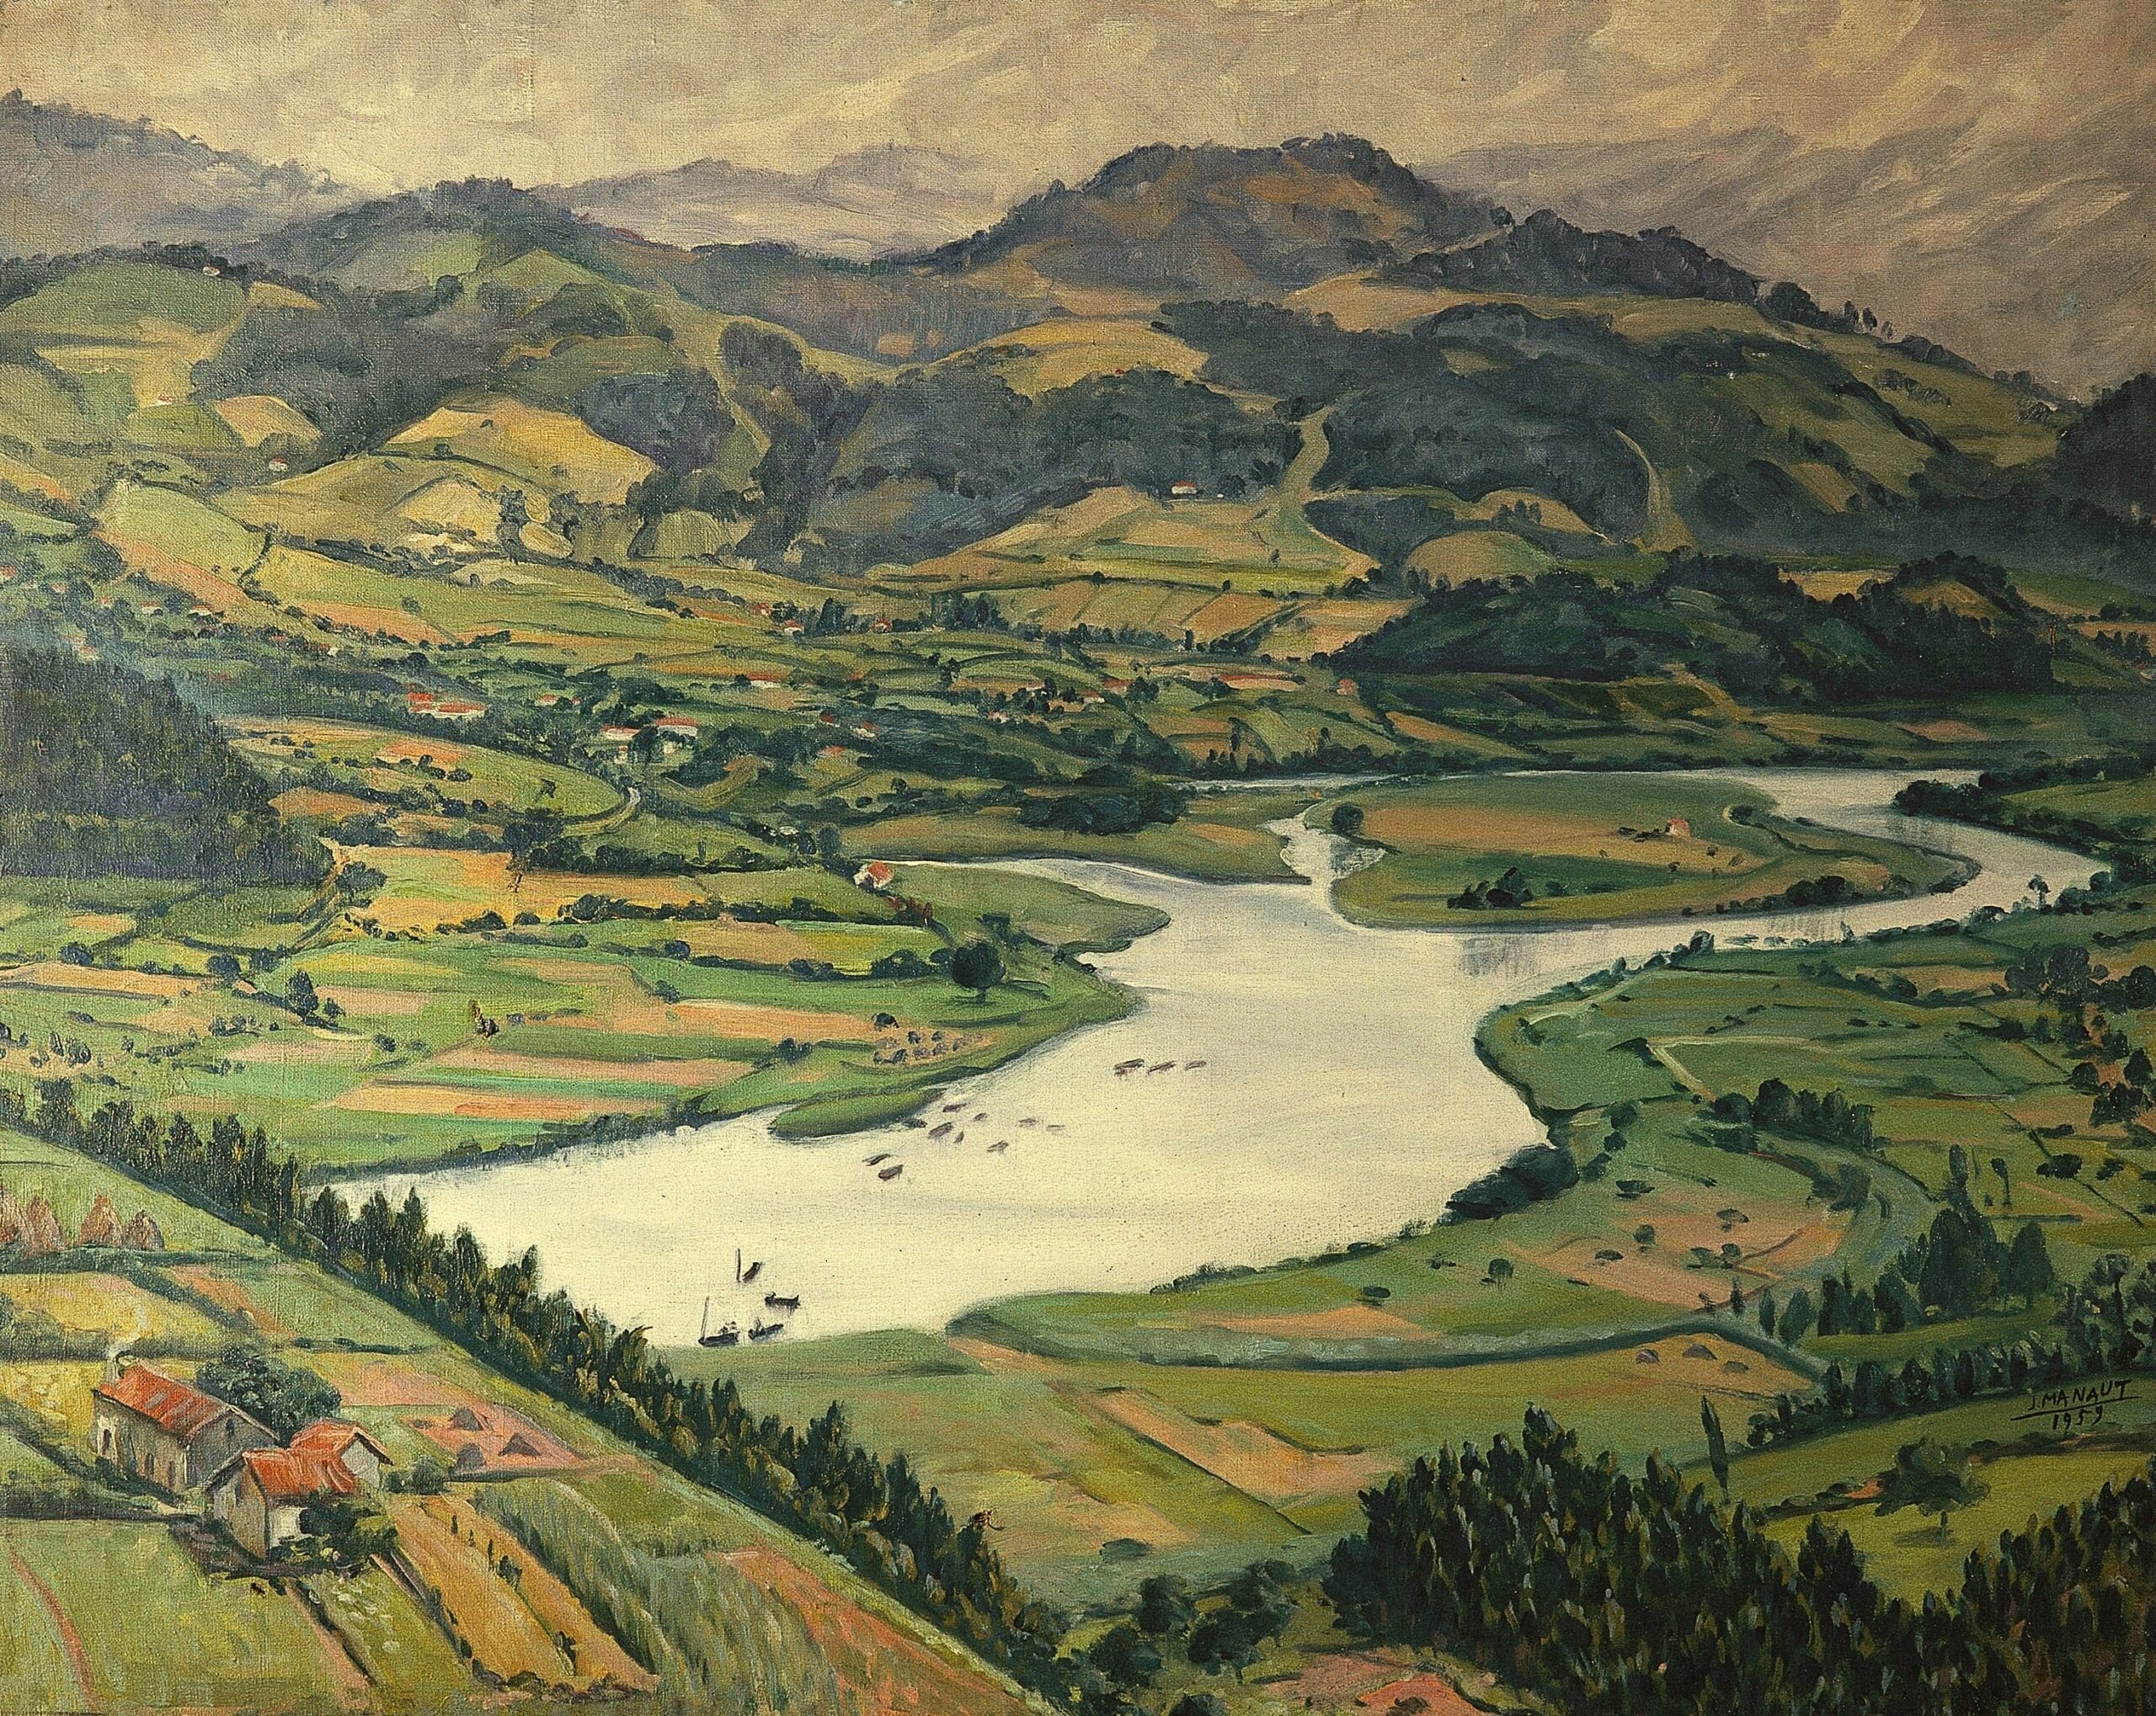 Pintura de José Manaut titulada Valle del Nalón; desembocadura del Nalón, San Esteban de Pravia (Asturias), 1959. Óleo sobre lienzo.